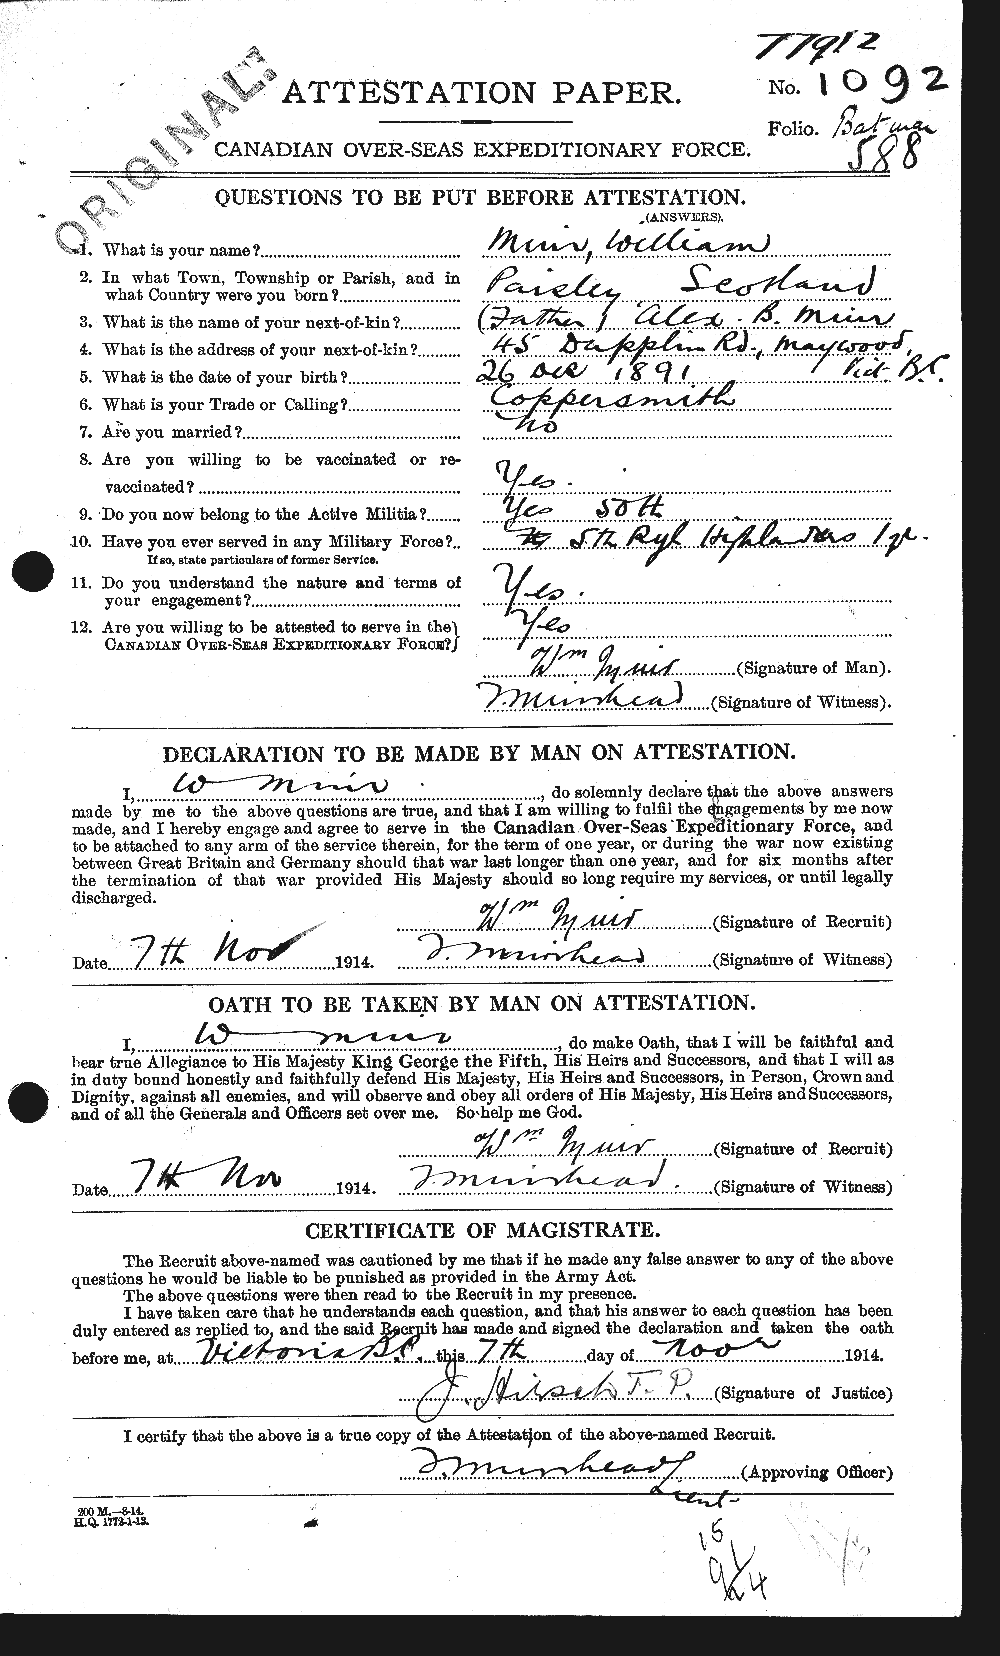 Dossiers du Personnel de la Première Guerre mondiale - CEC 509700a